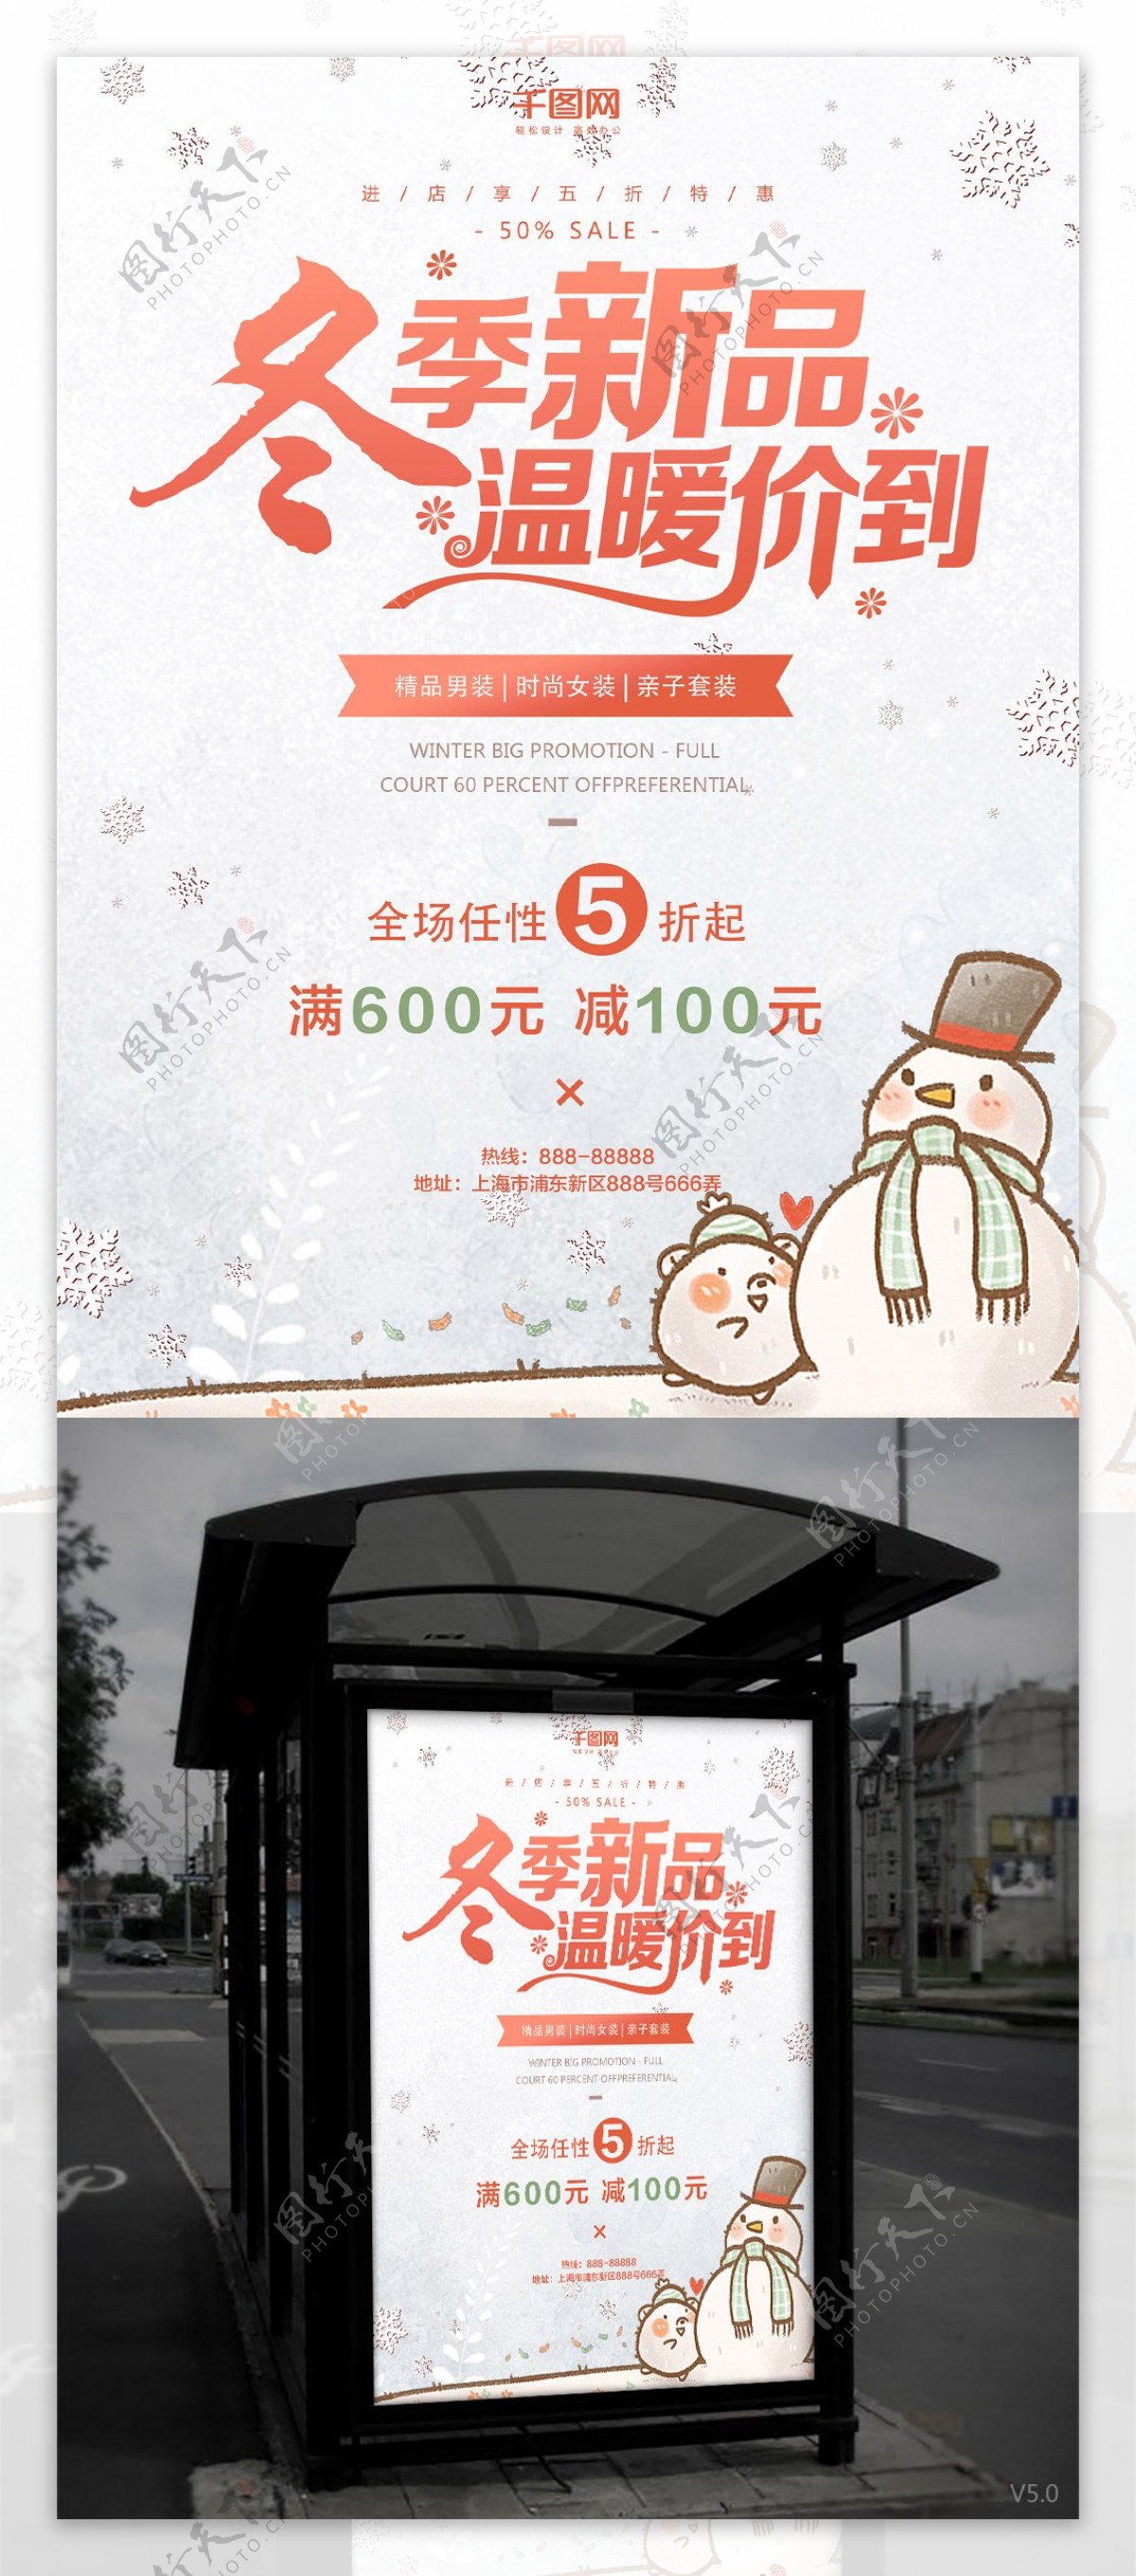 清新卡通雪人冬季促销商业海报设计